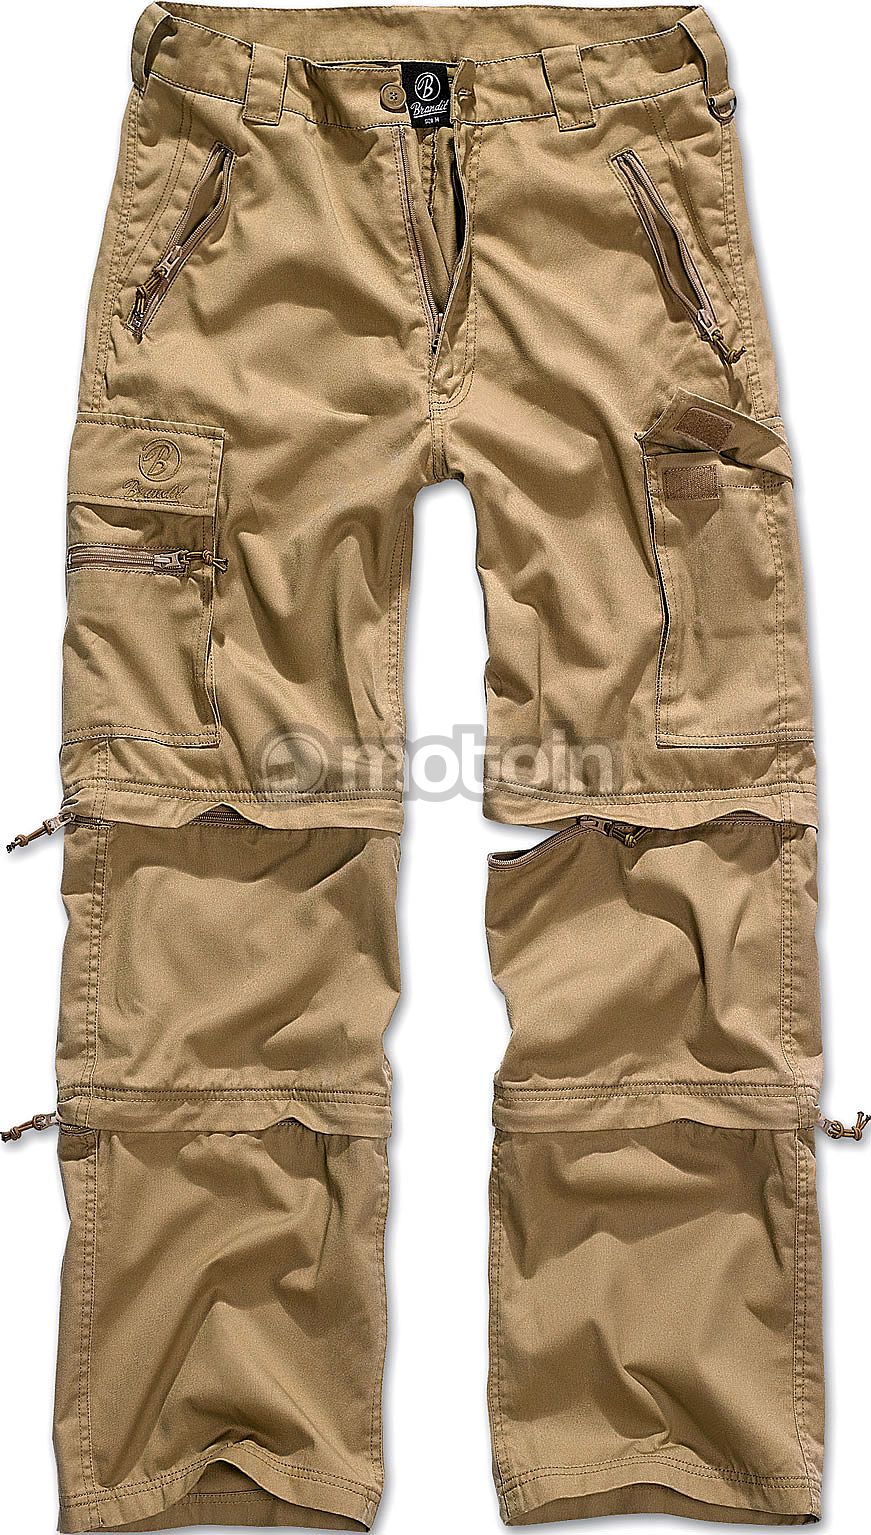 Brandit Vintage Cargo Pants beige -  - Online Hip